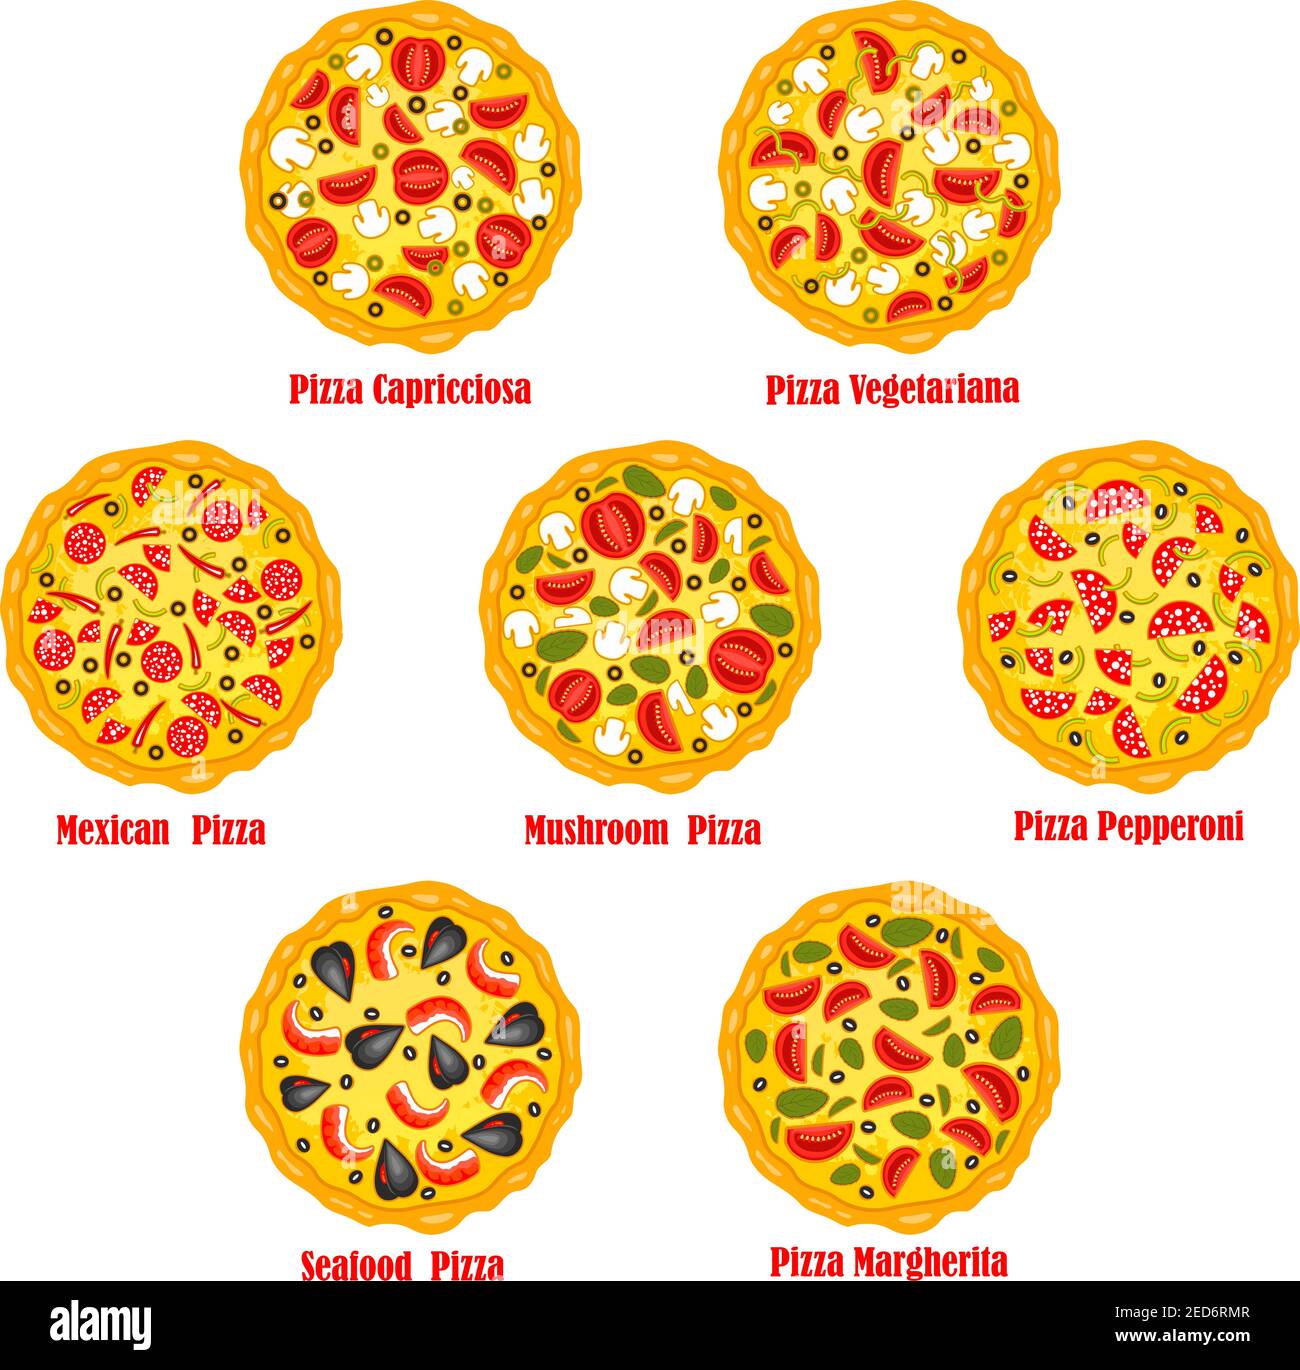 технологические карты для пиццы пепперони фото 28